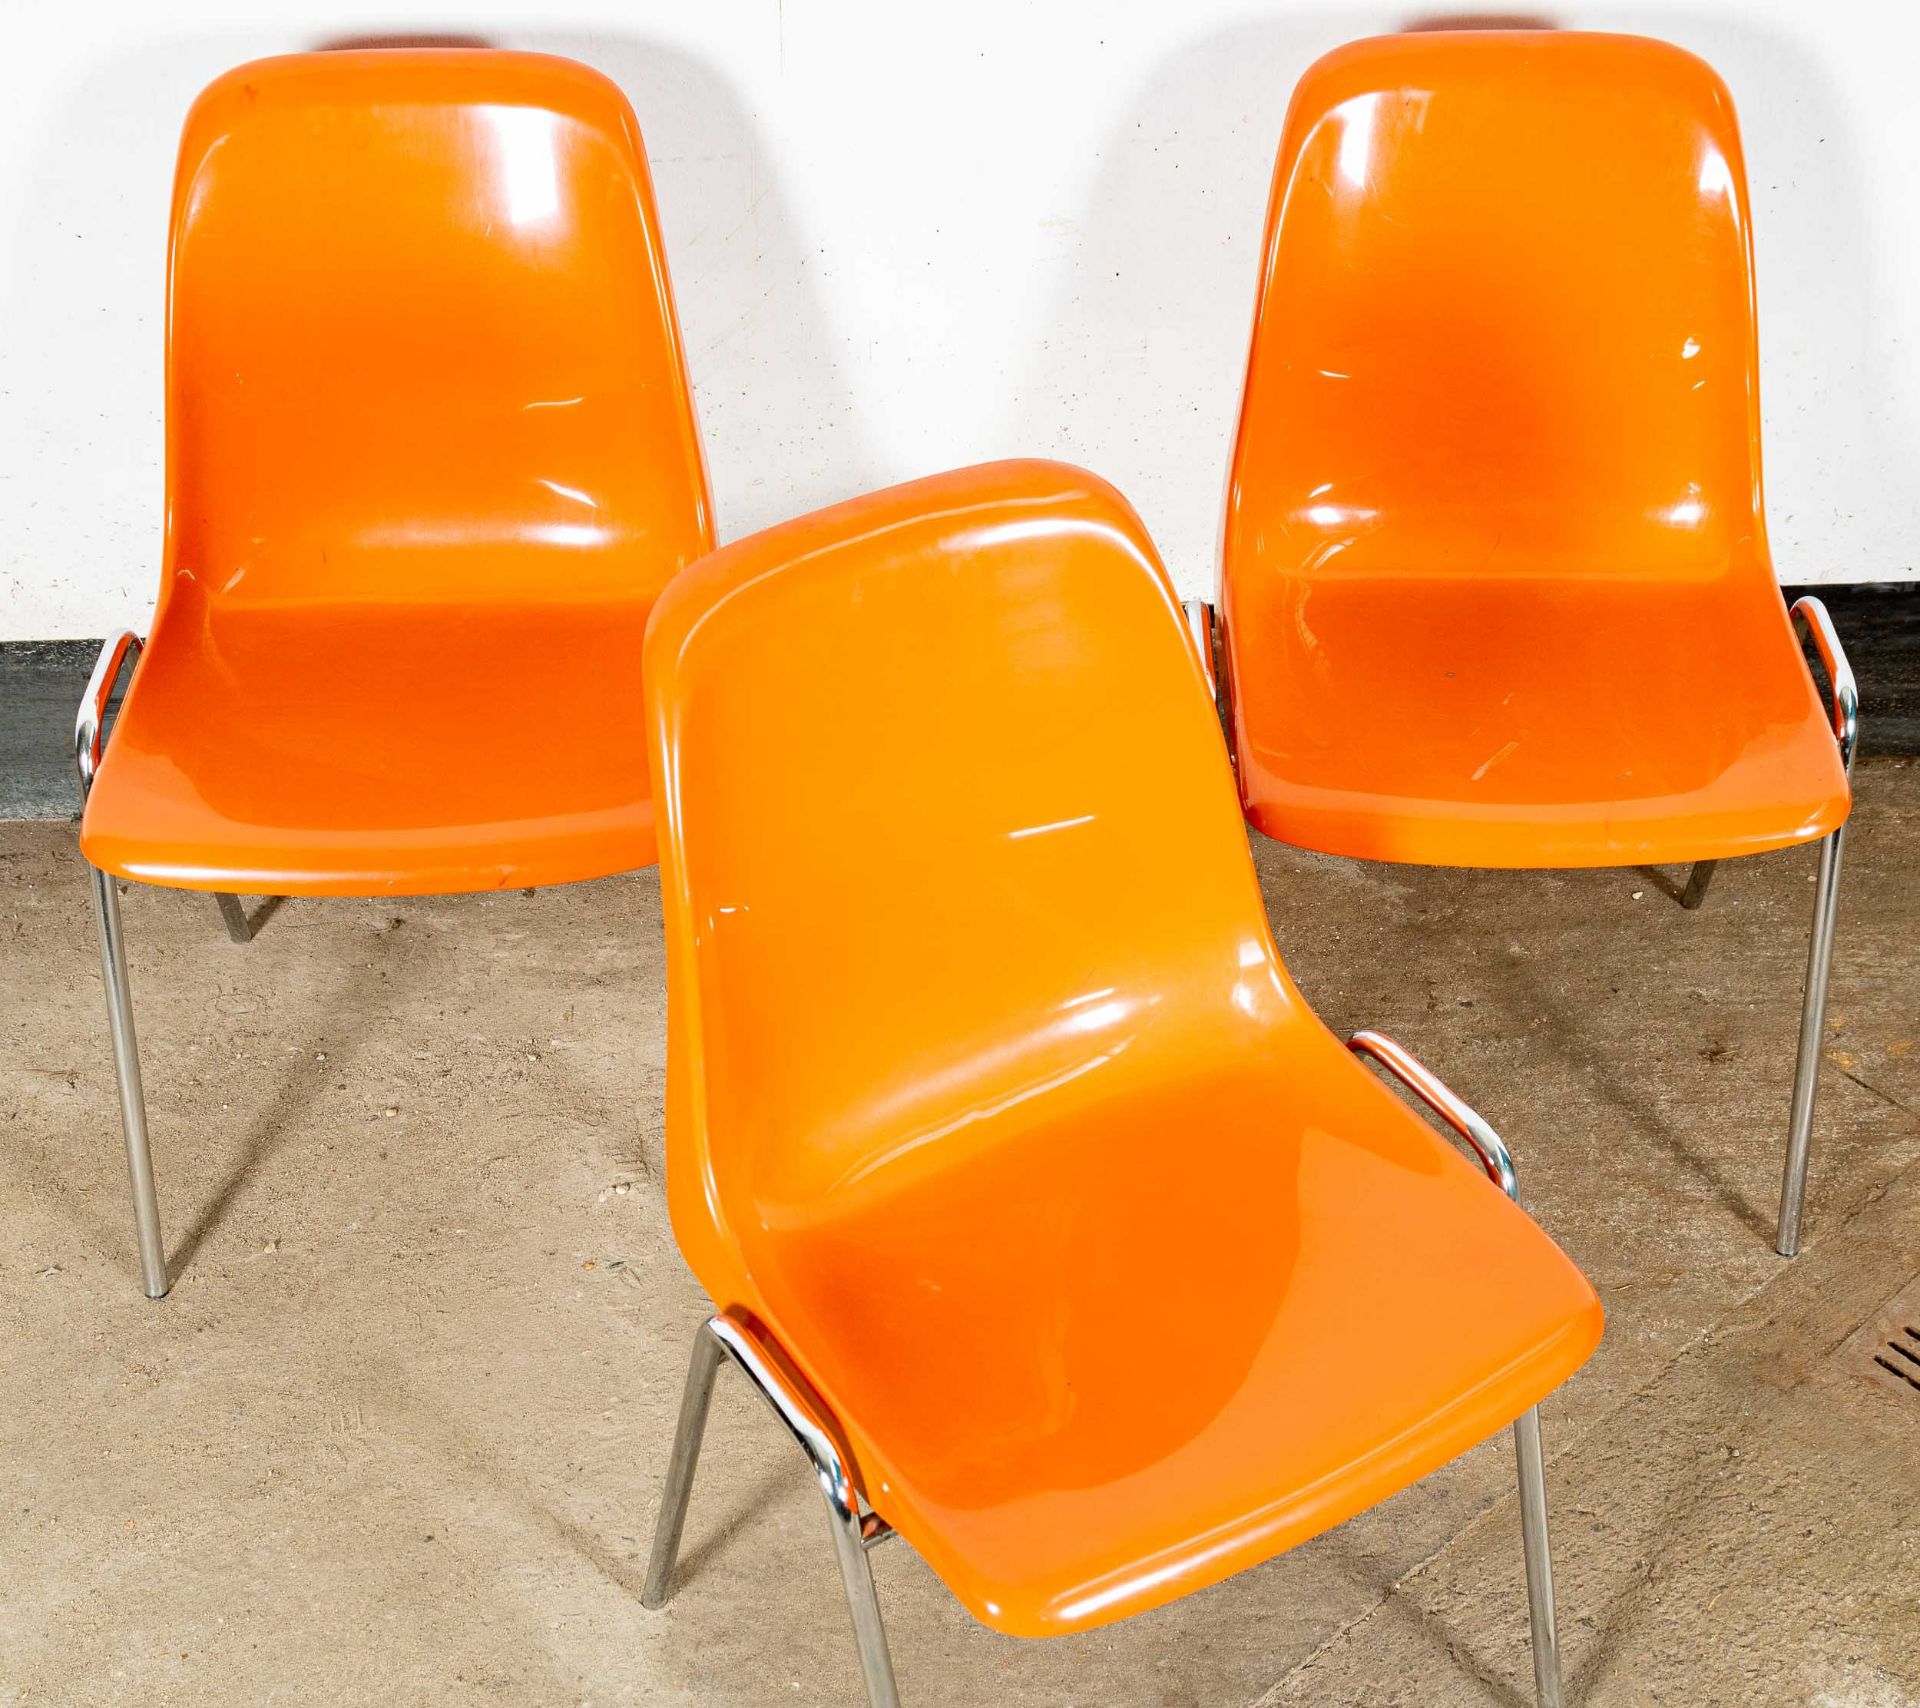 Folge von 3 Stapelstühlen der Marke "DRABERT", orange Kunststoffsitze, 1970er Jahre, verchromte Ges - Bild 3 aus 7